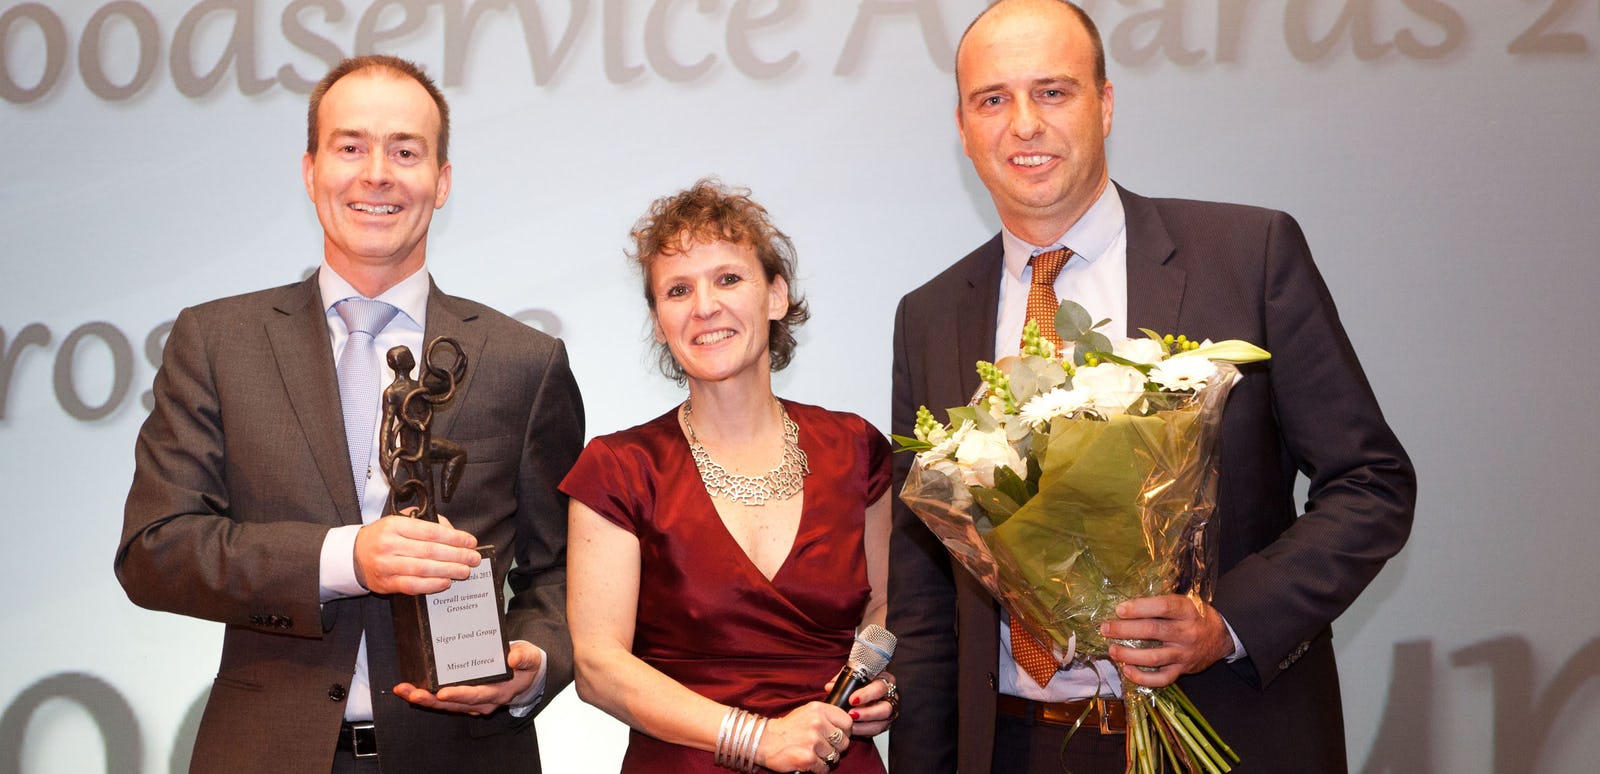 Sligro aangenaam verrast door winst FoodService Award beste grossier